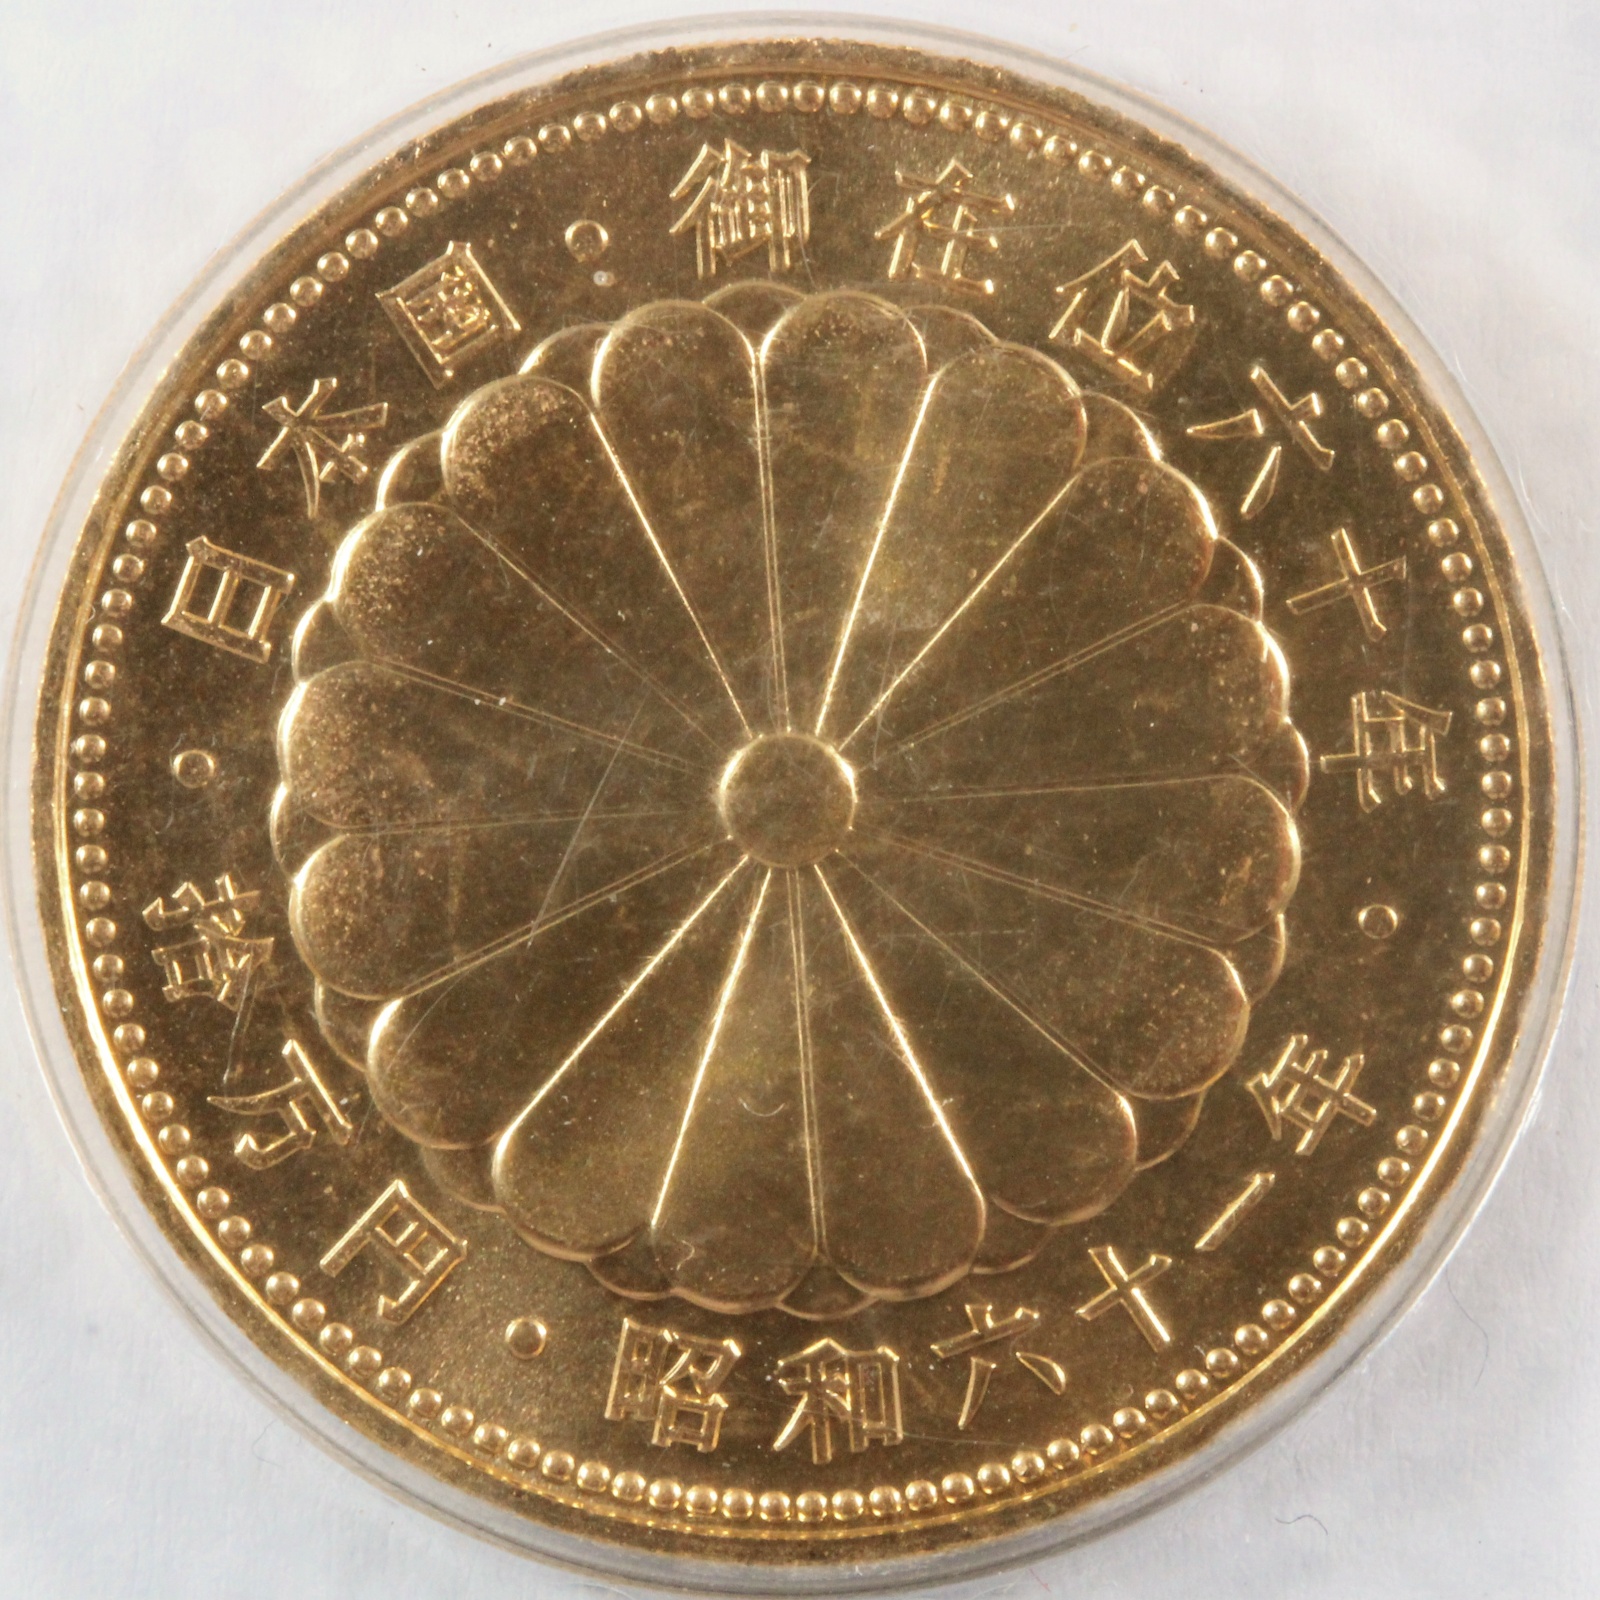 業界最安値】昭和天皇御在位60年記念10万円金貨 古銭 記念コイン 純金 